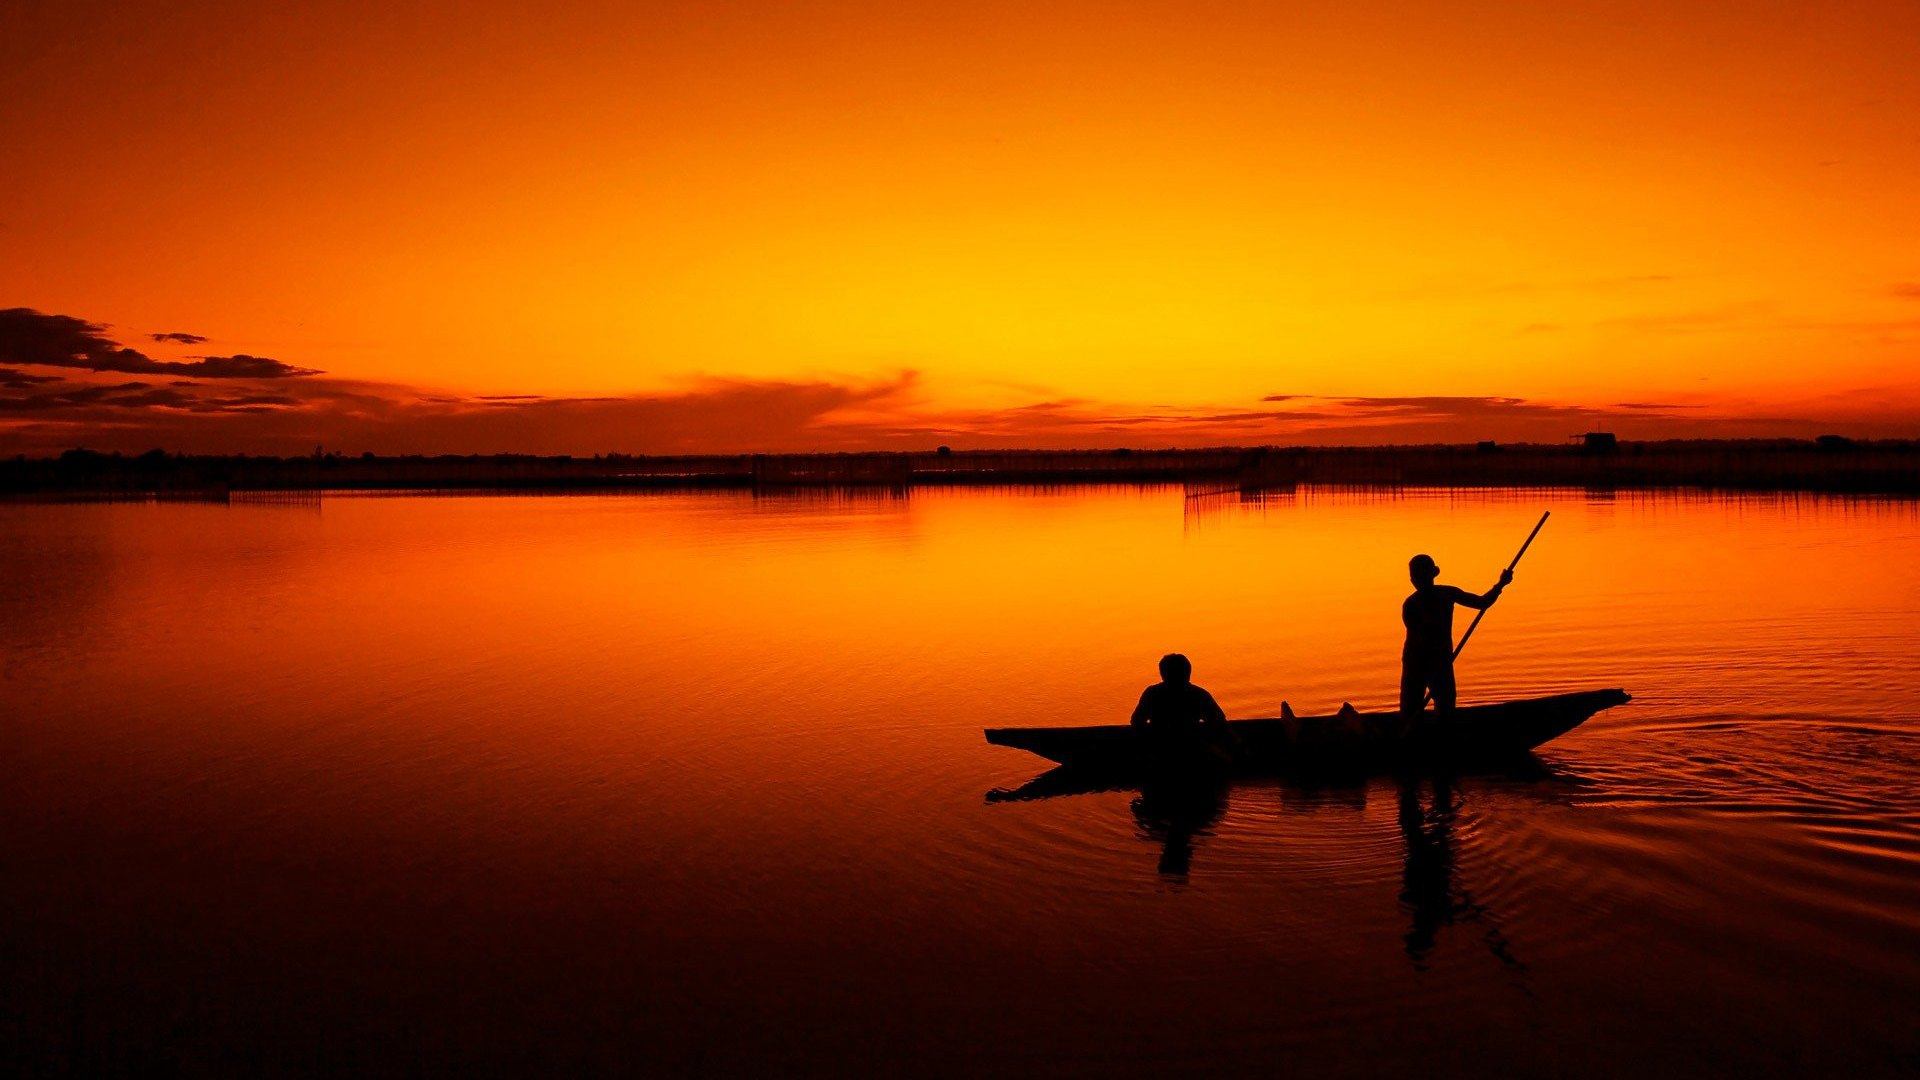 黄昏 湖面上划着轻舟的渔民唯美高清桌面壁纸图片 橙红色的天